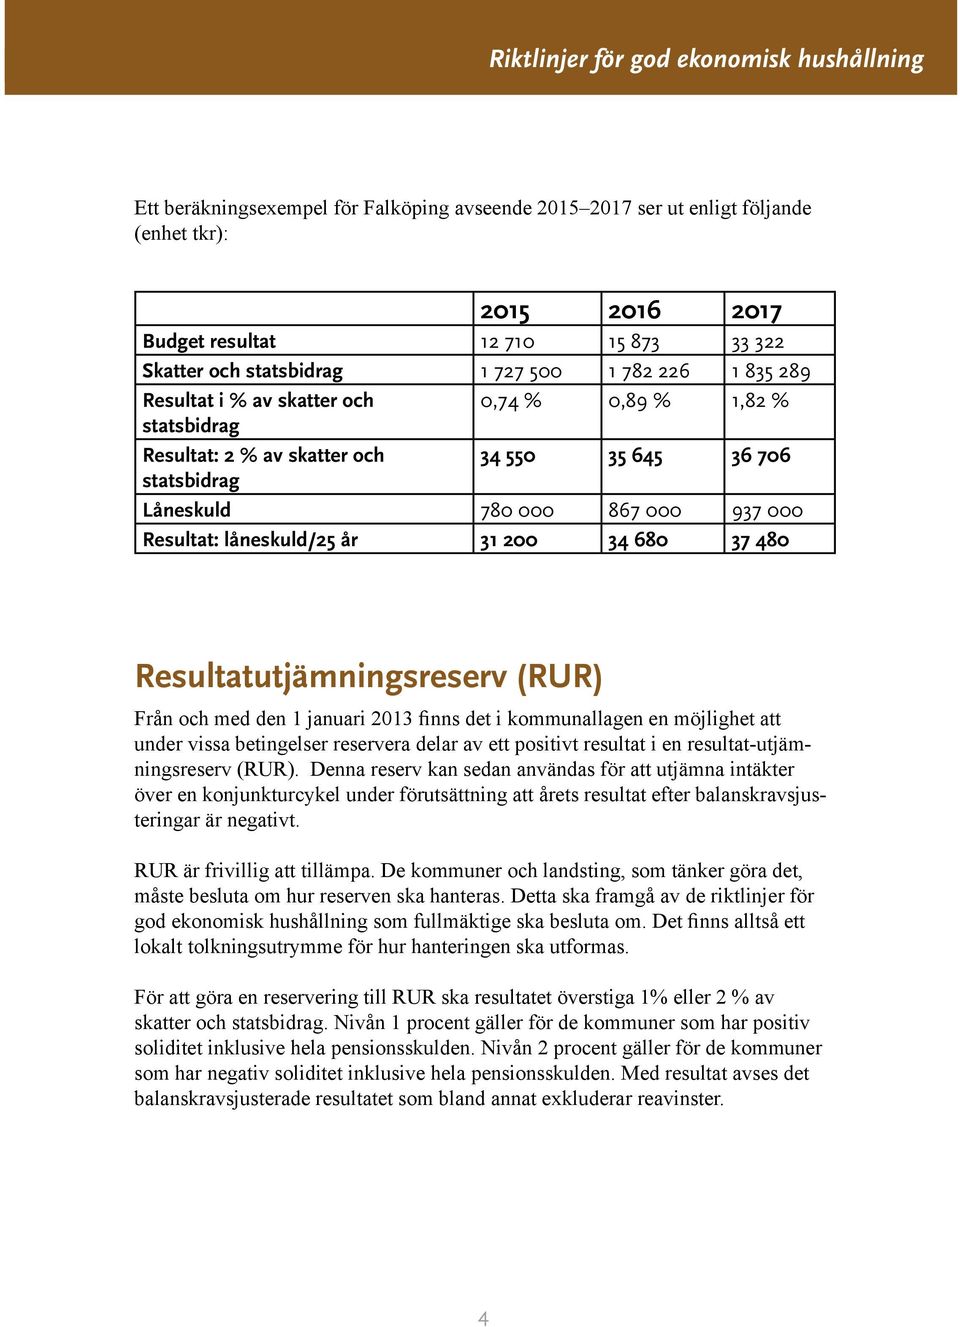 480 Resultatutjämningsreserv (RUR) Från och med den 1 januari 2013 finns det i kommunallagen en möjlighet att under vissa betingelser reservera delar av ett positivt resultat i en